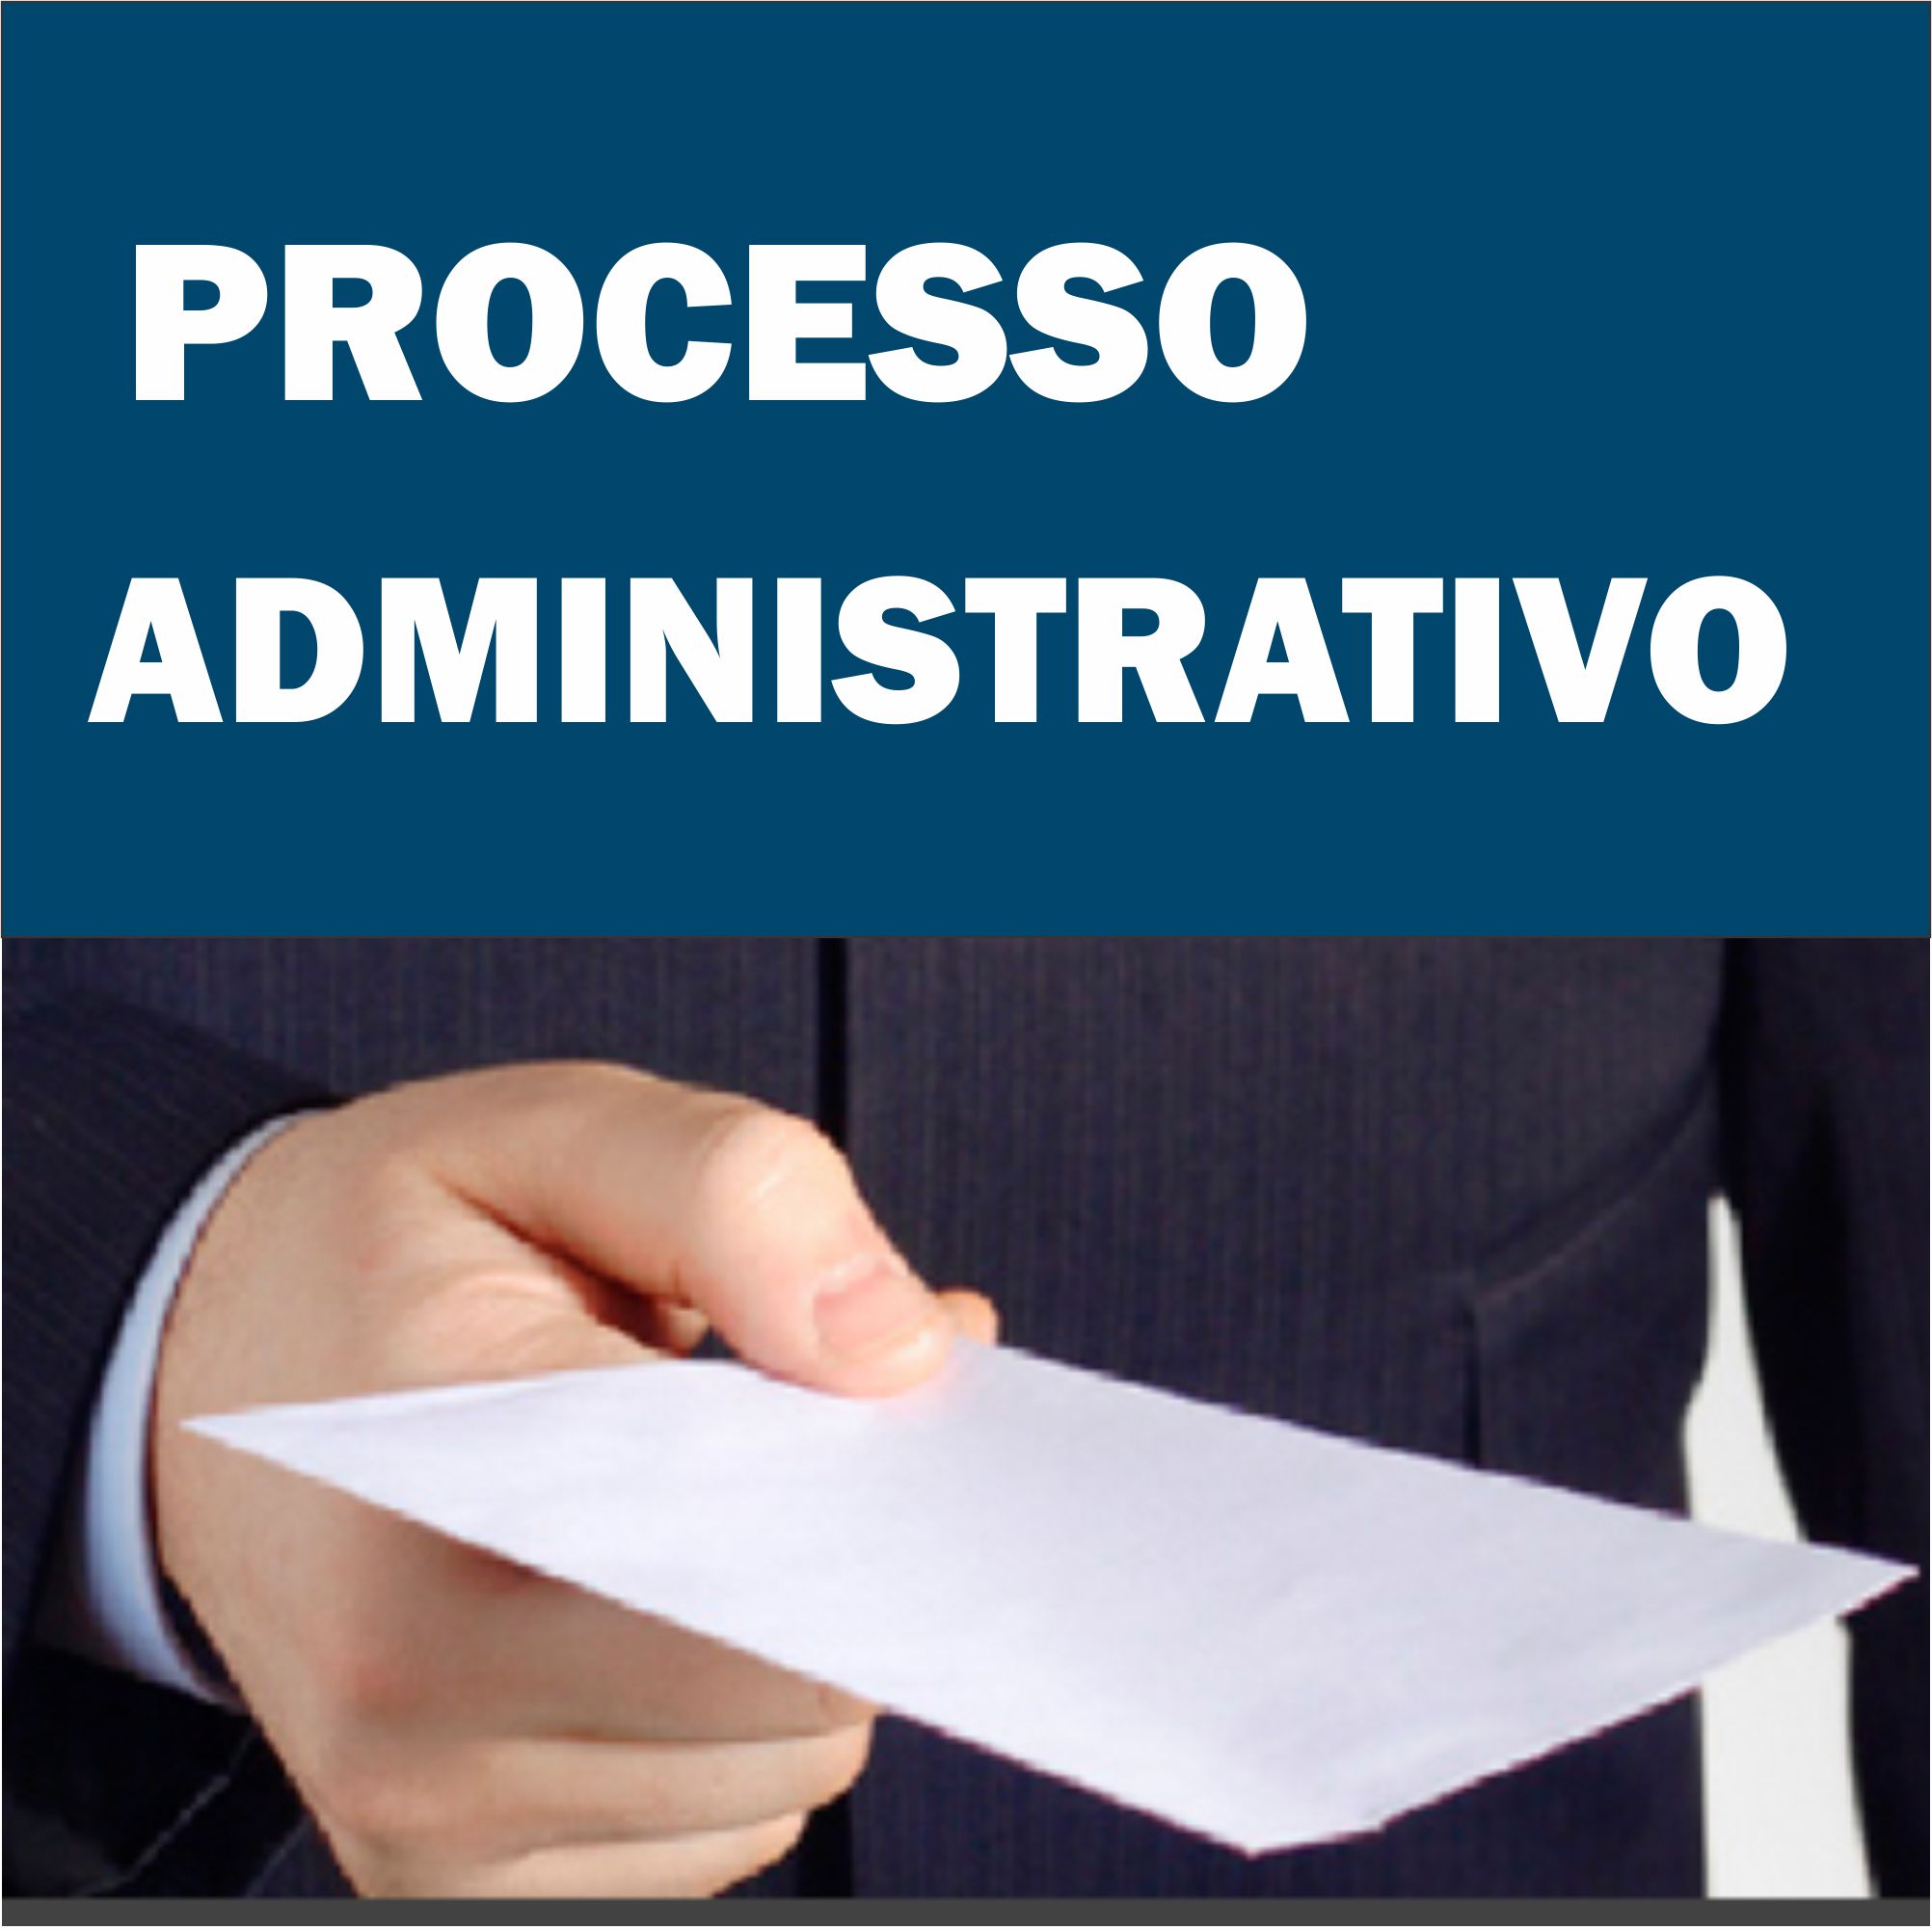 Processo Administrativo 003 - Cópia Integral